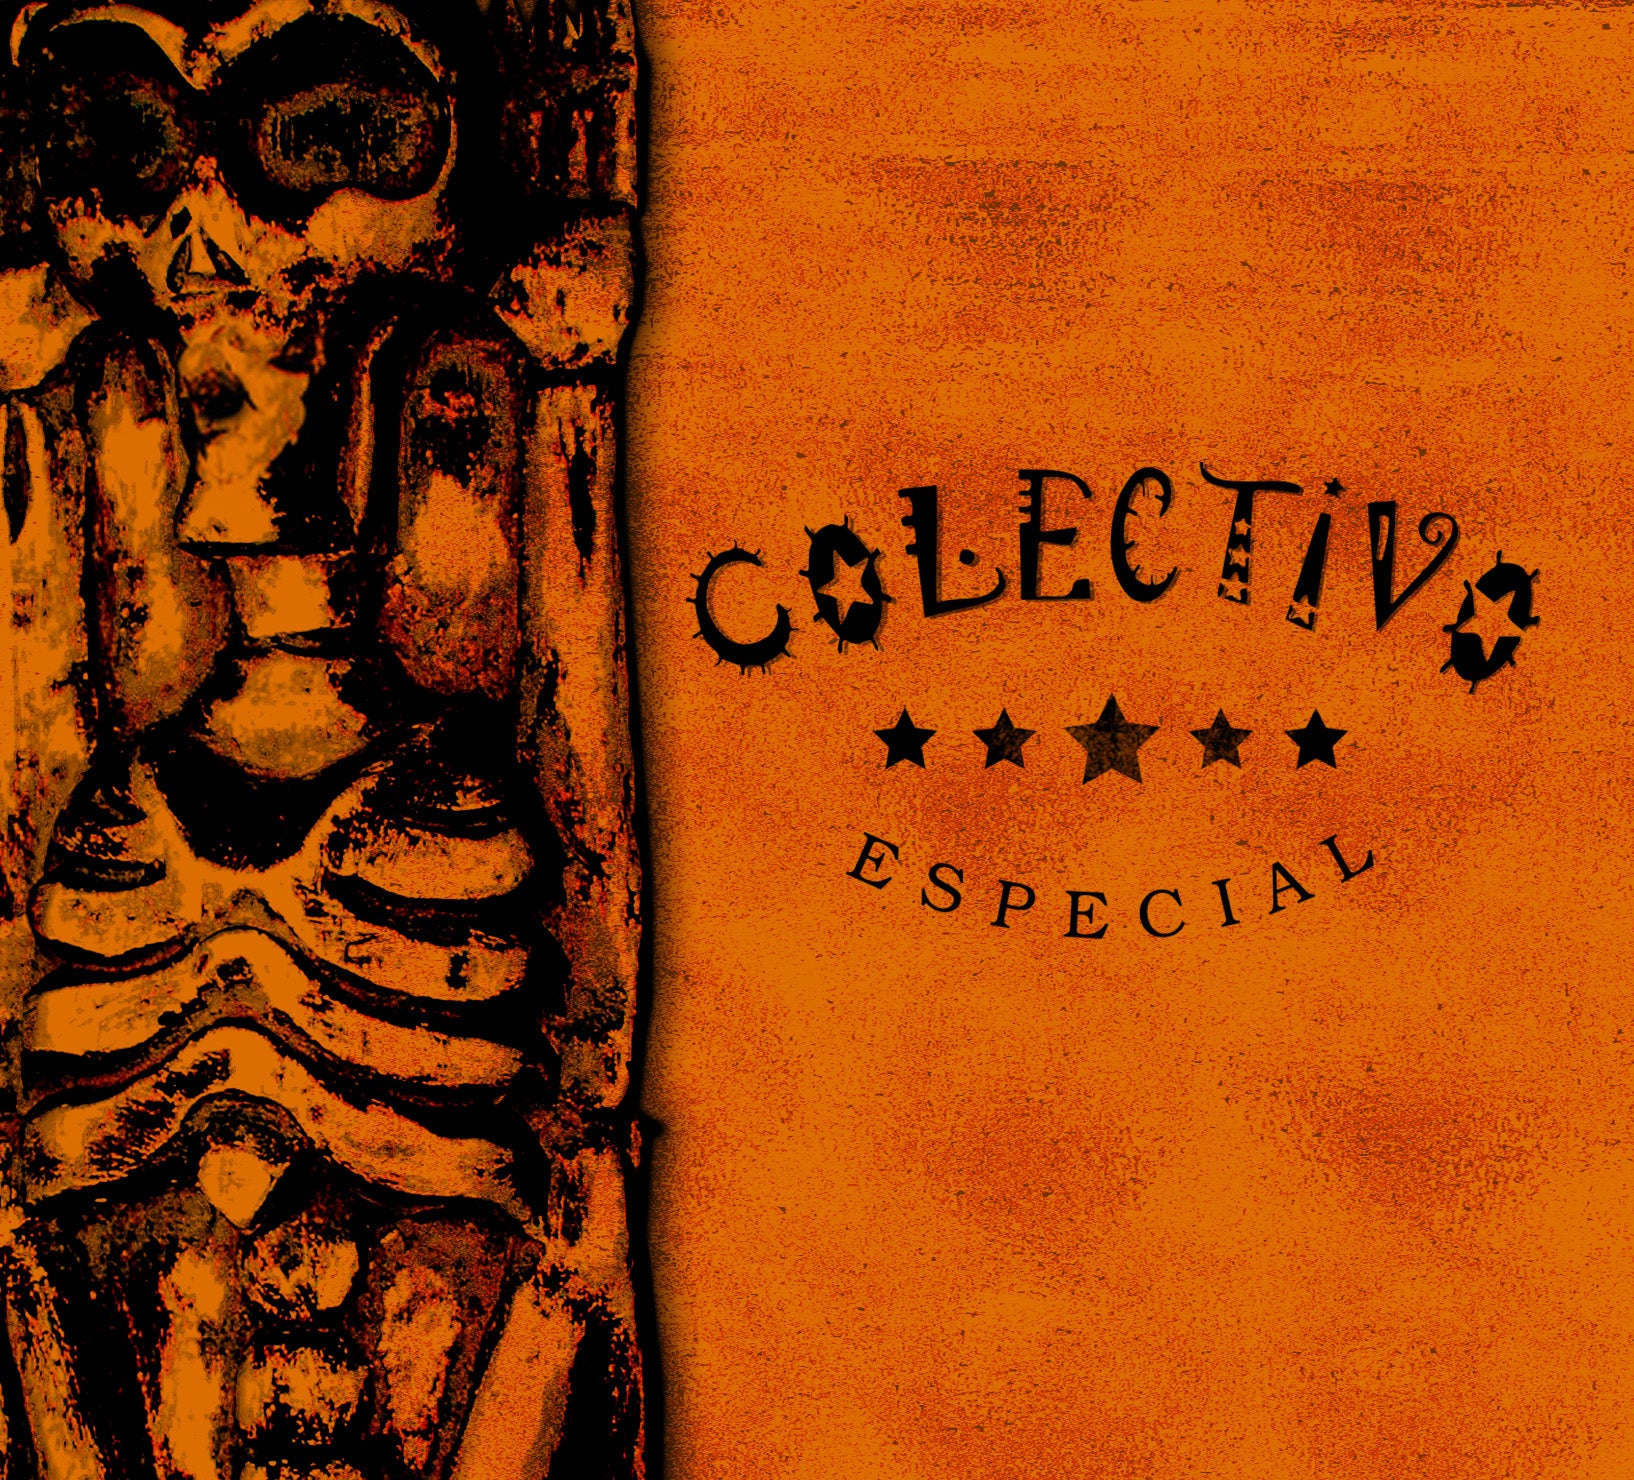 CD – Colectivo – Especial – TRICD7241